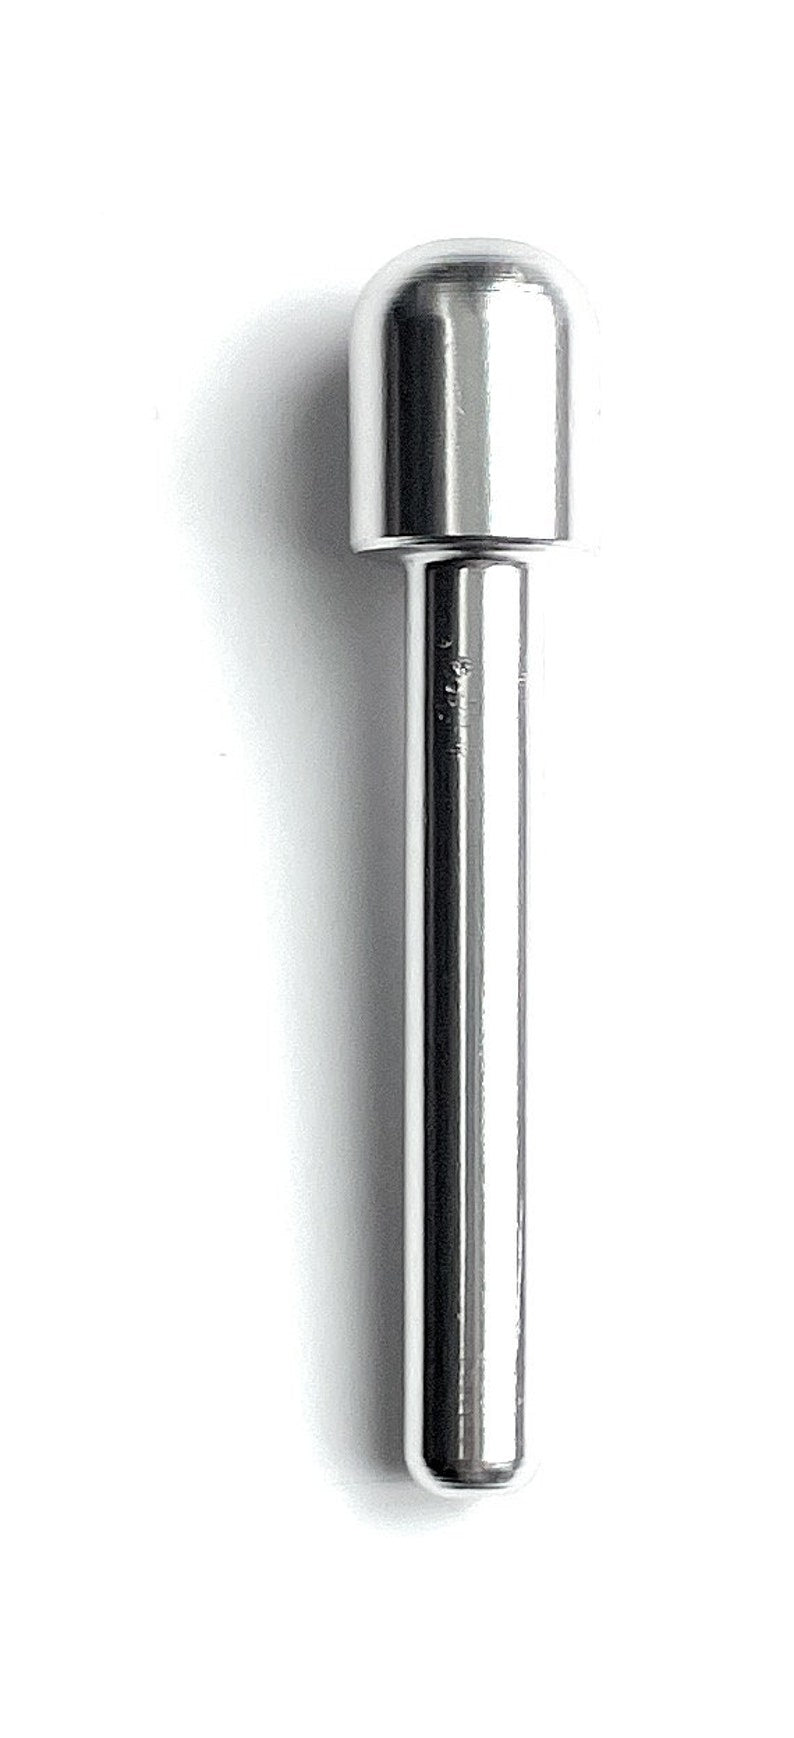 1 x Röhrchen aus Aluminum– für deinen Schnupftabak- Zieh - Röhrchen - Snuff - Snorter Dispenser – Länge 70mm  (Silber)